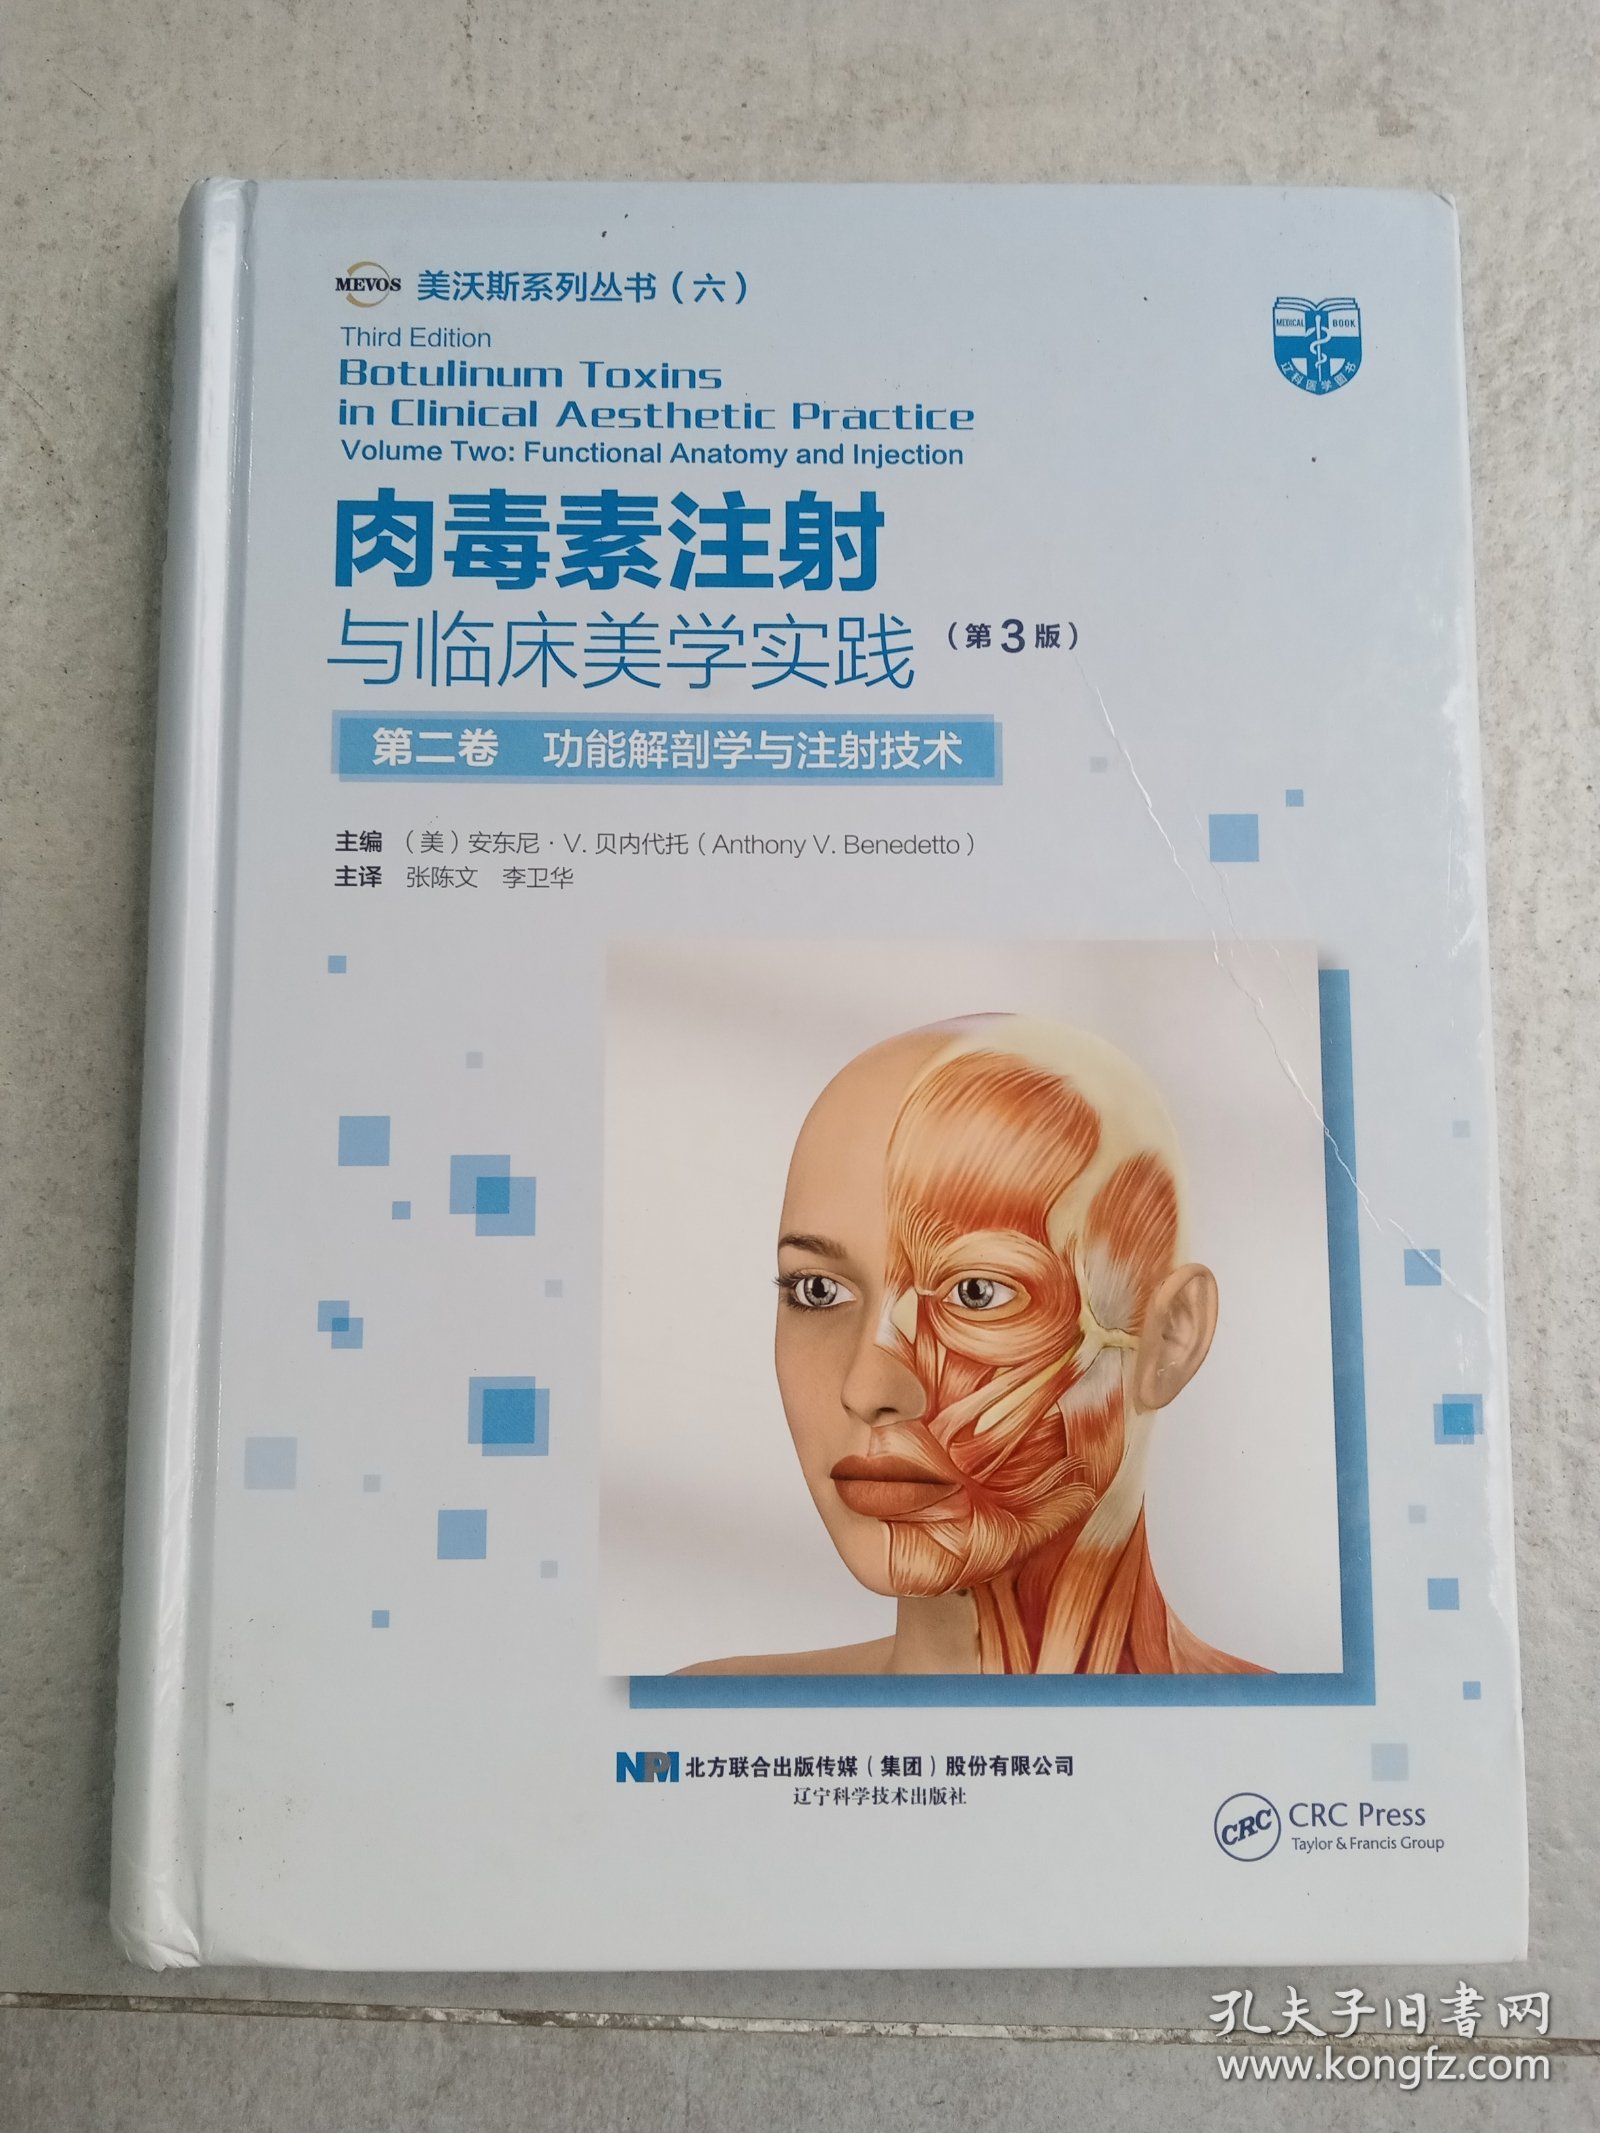 肉毒素注射与临床美学实践（第3版）第二卷功能解剖学与注射技术